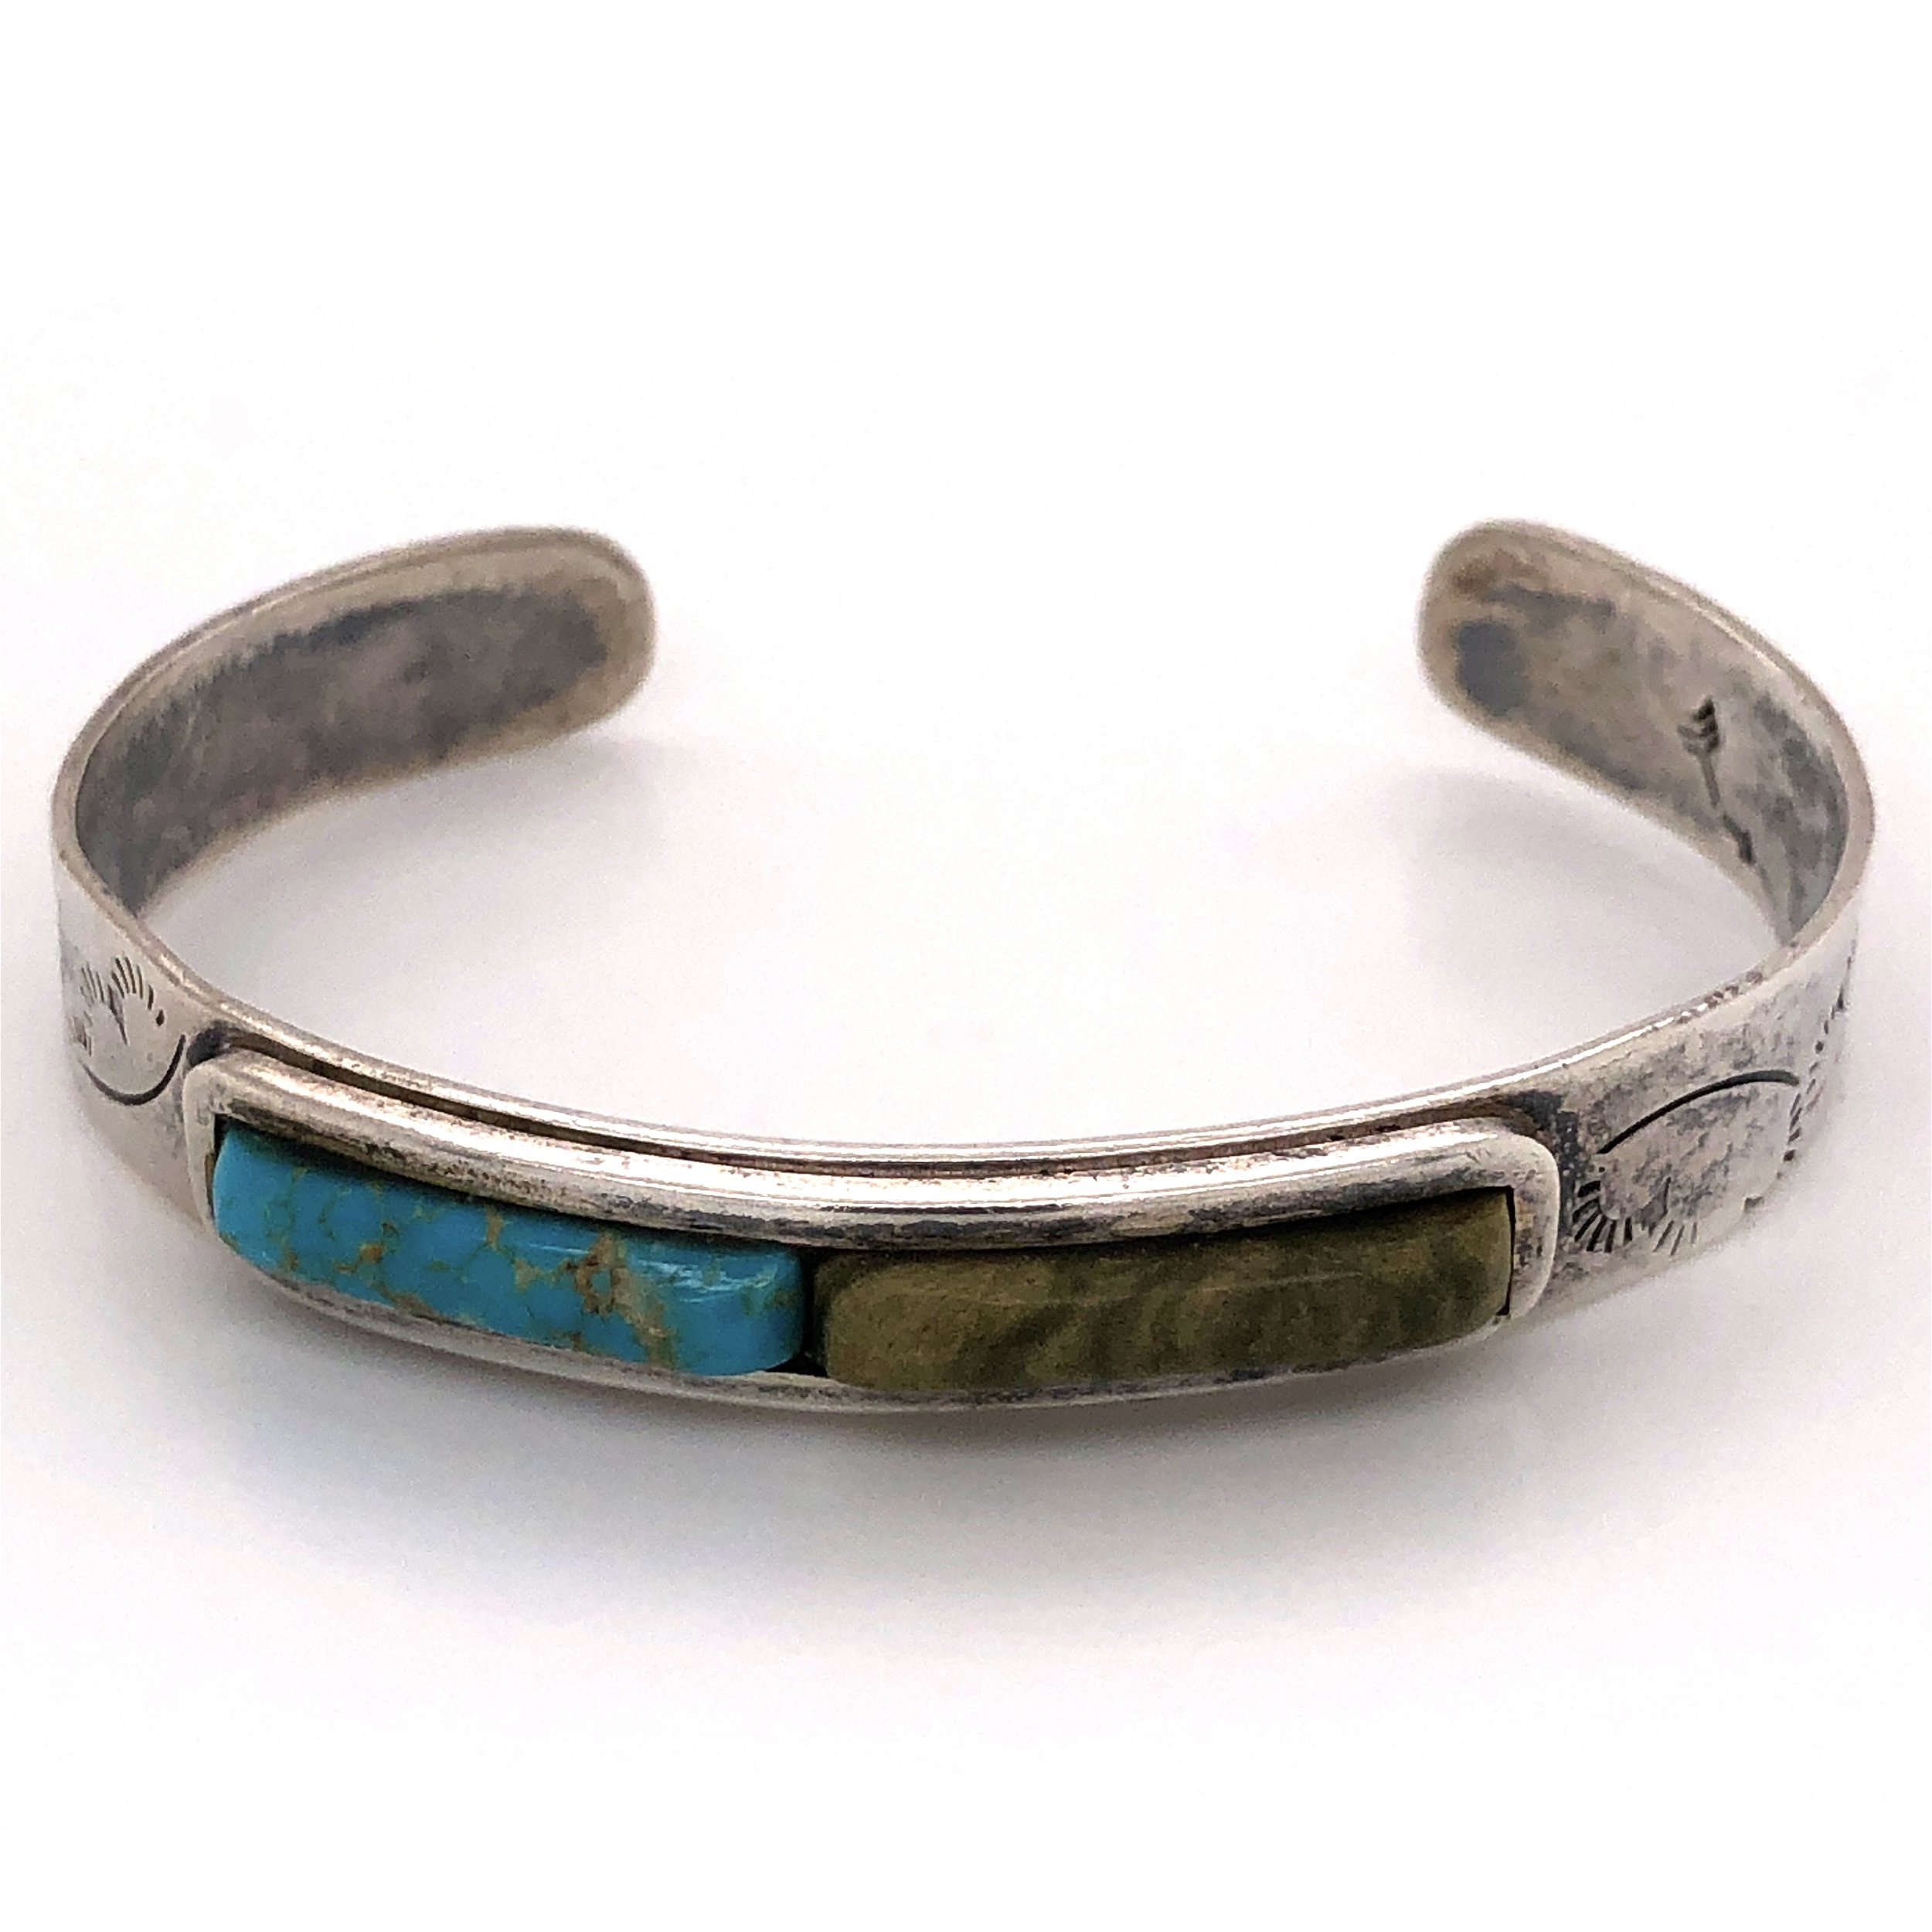 Navajo Old Pawn Vintage Turquoise & Sterling Silver Bracelet Signed | eBay